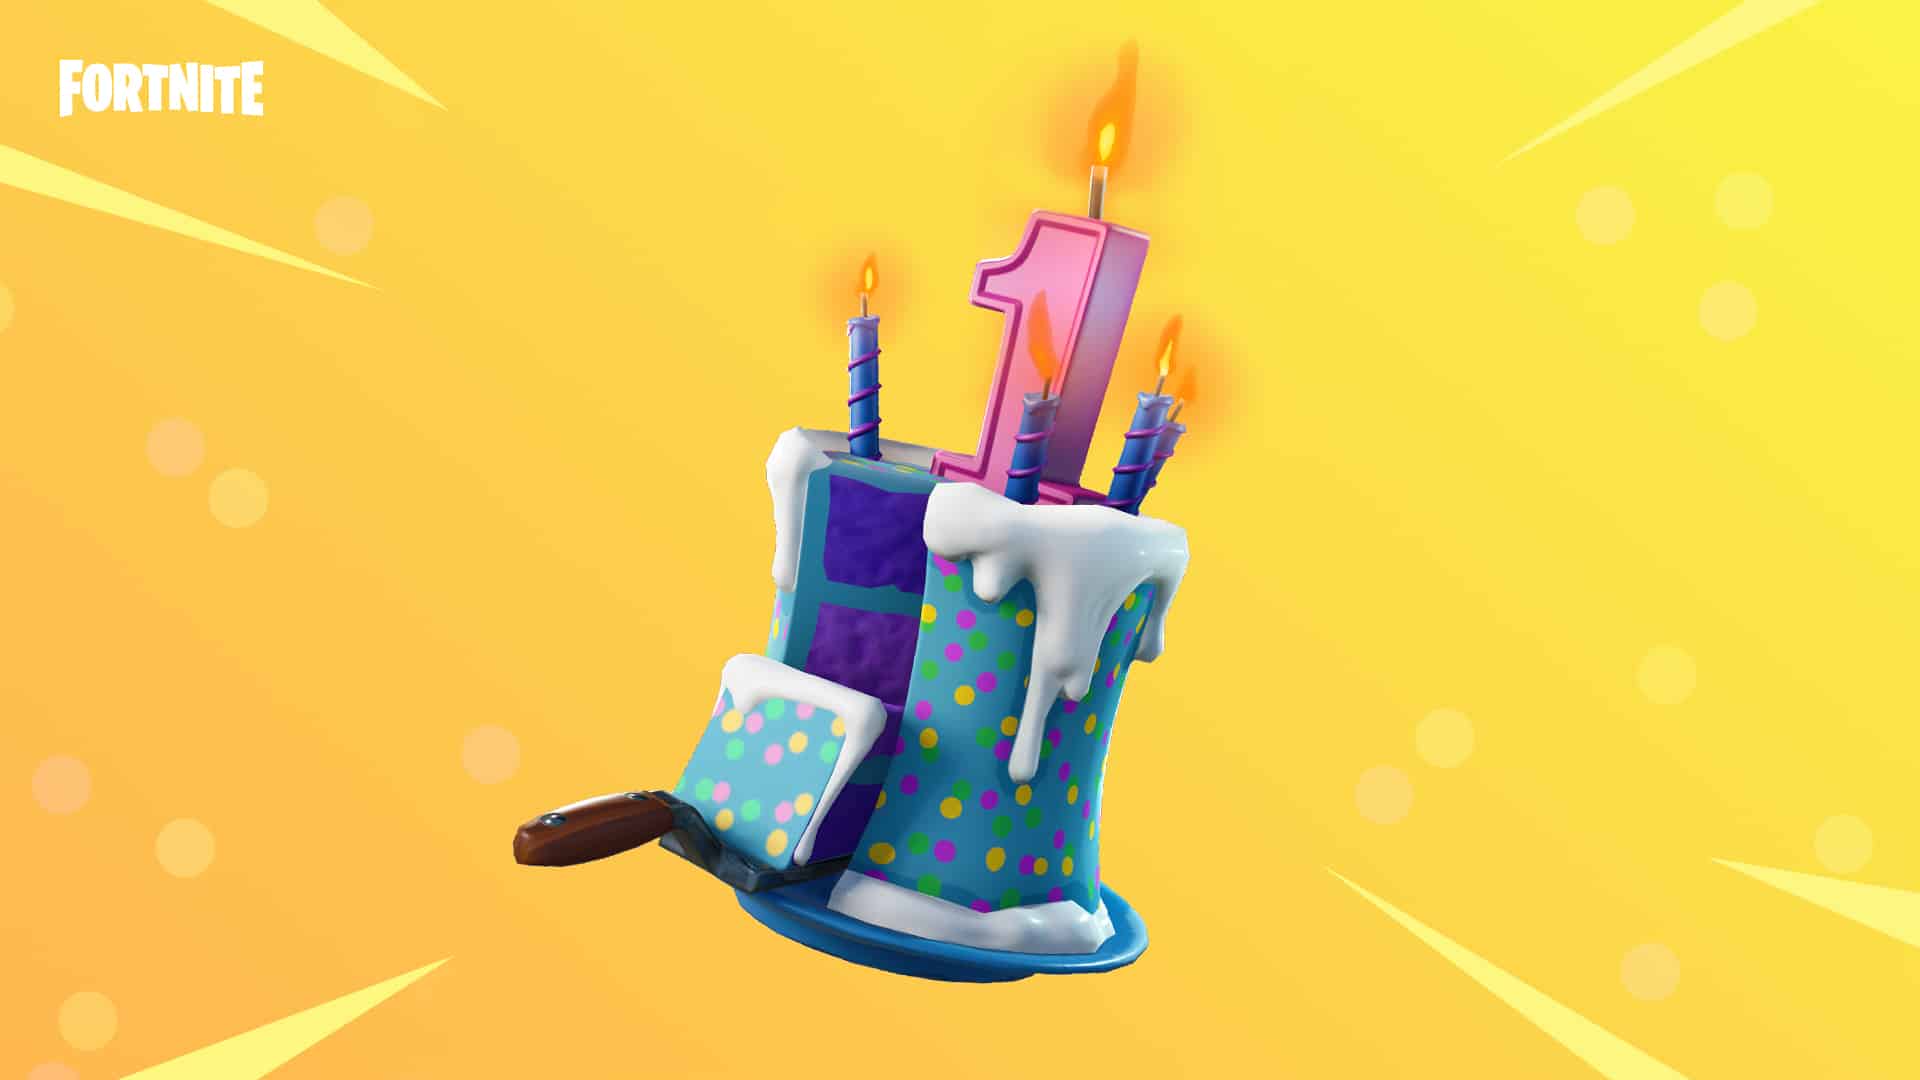 Fortnite birthday cake rewards